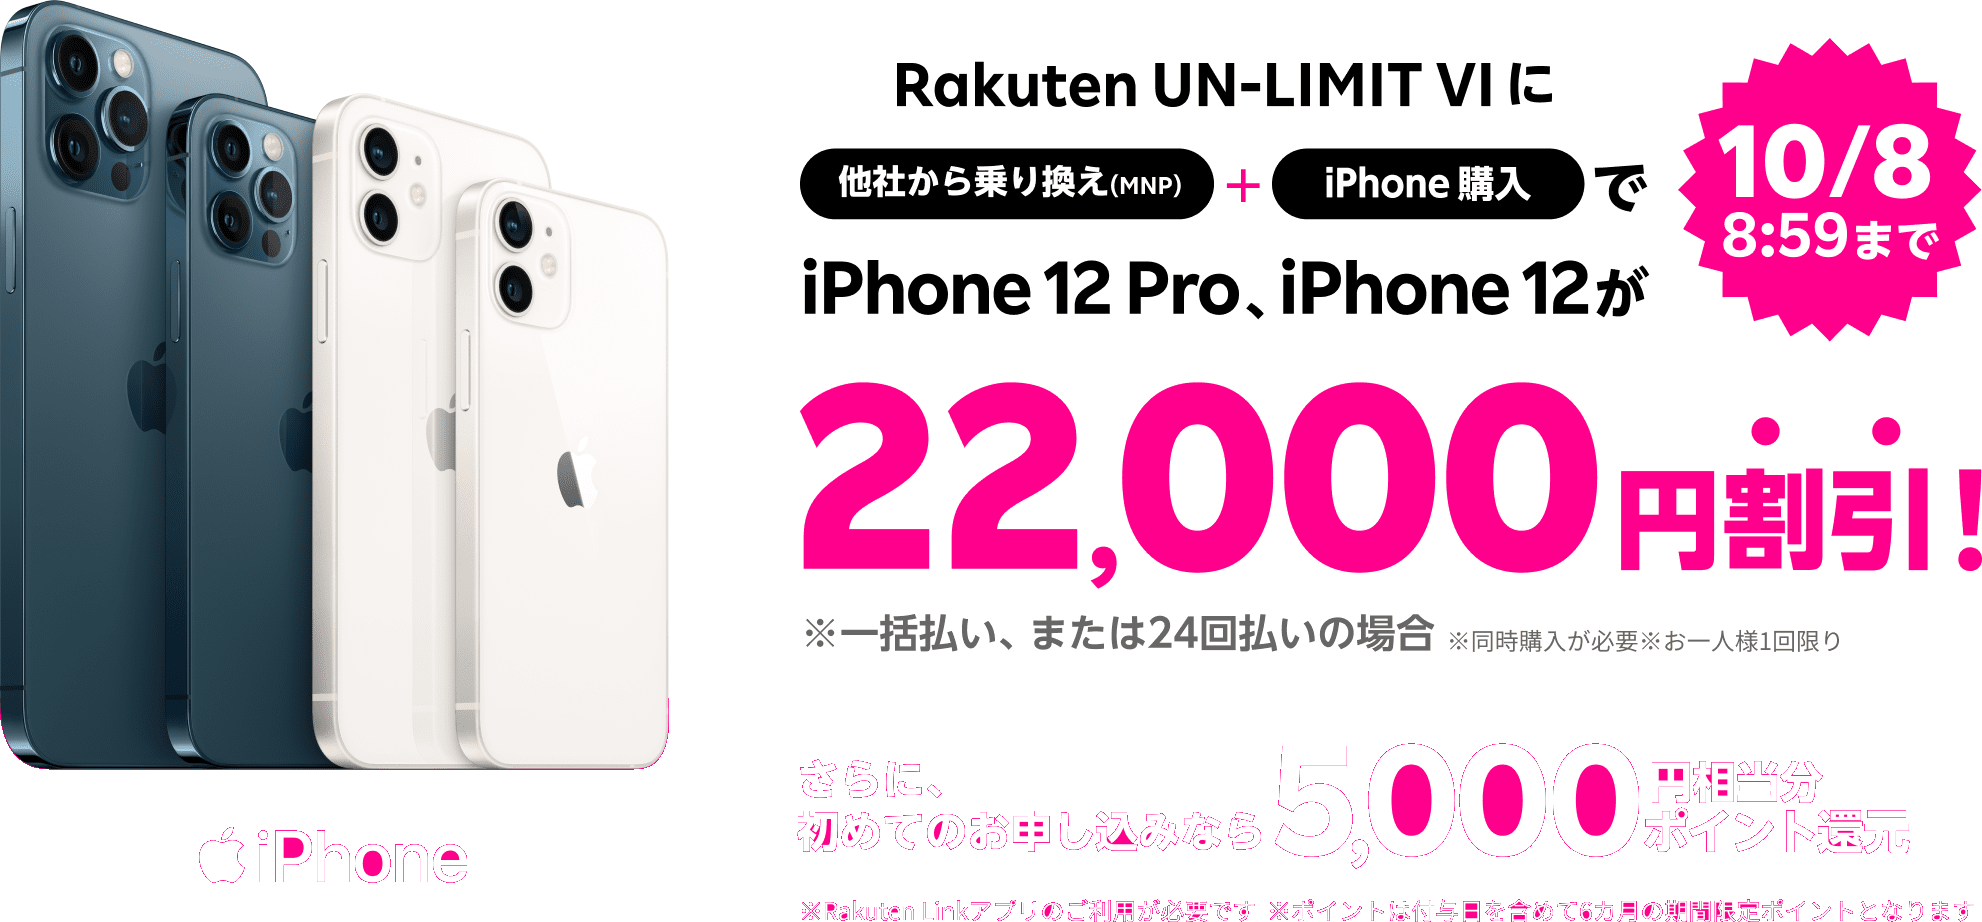 iPhone超トクのりかえ　iPhoneのお乗り換えは楽天モバイルが超おトク！Rakuten UN-LIMIT VIをいずれかのお申し込みで対象のiPhoneとセットで他社から乗り換え(MNP)なら回線のみでも最大20,000円相当分ポイント還元中！※楽天モバイルを初めてお申し込みいただいた場合